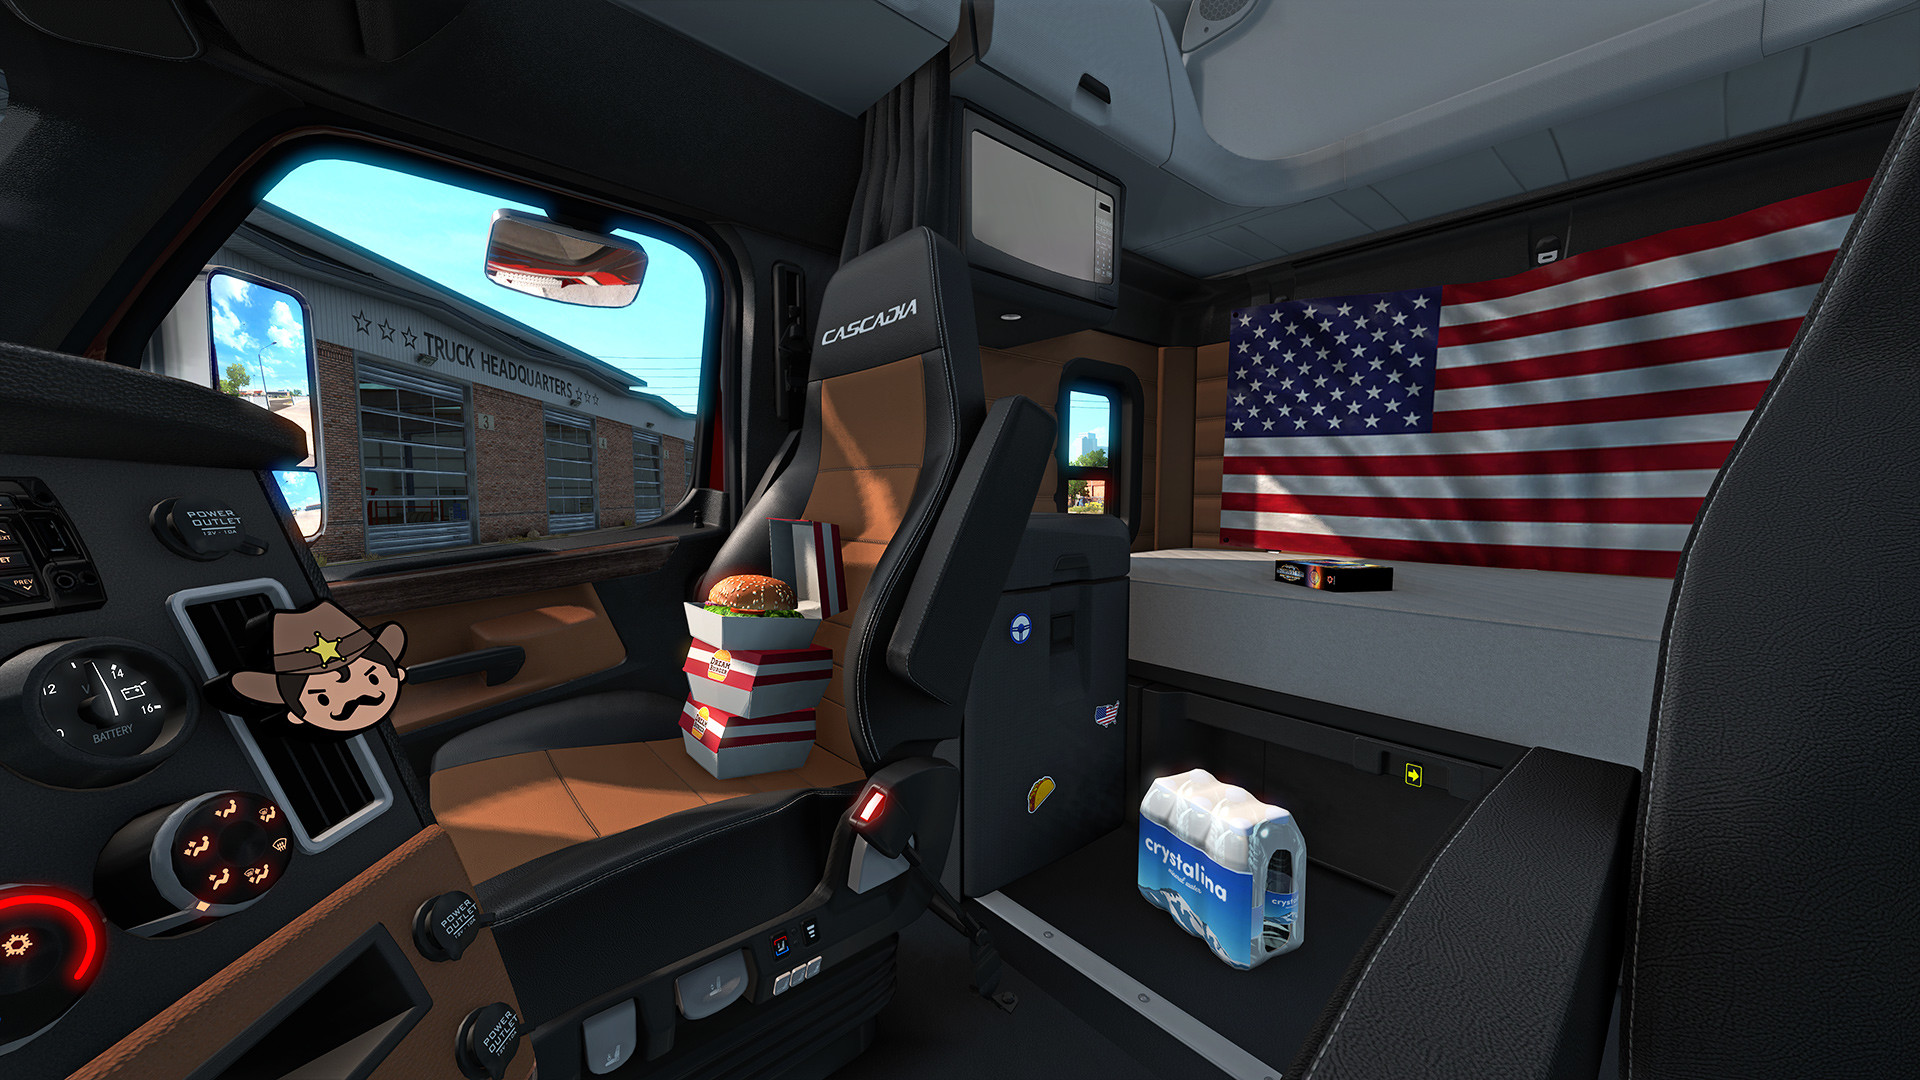 American Truck Simulator - Cabin Accessories DLC Steam CD Key 124.46$